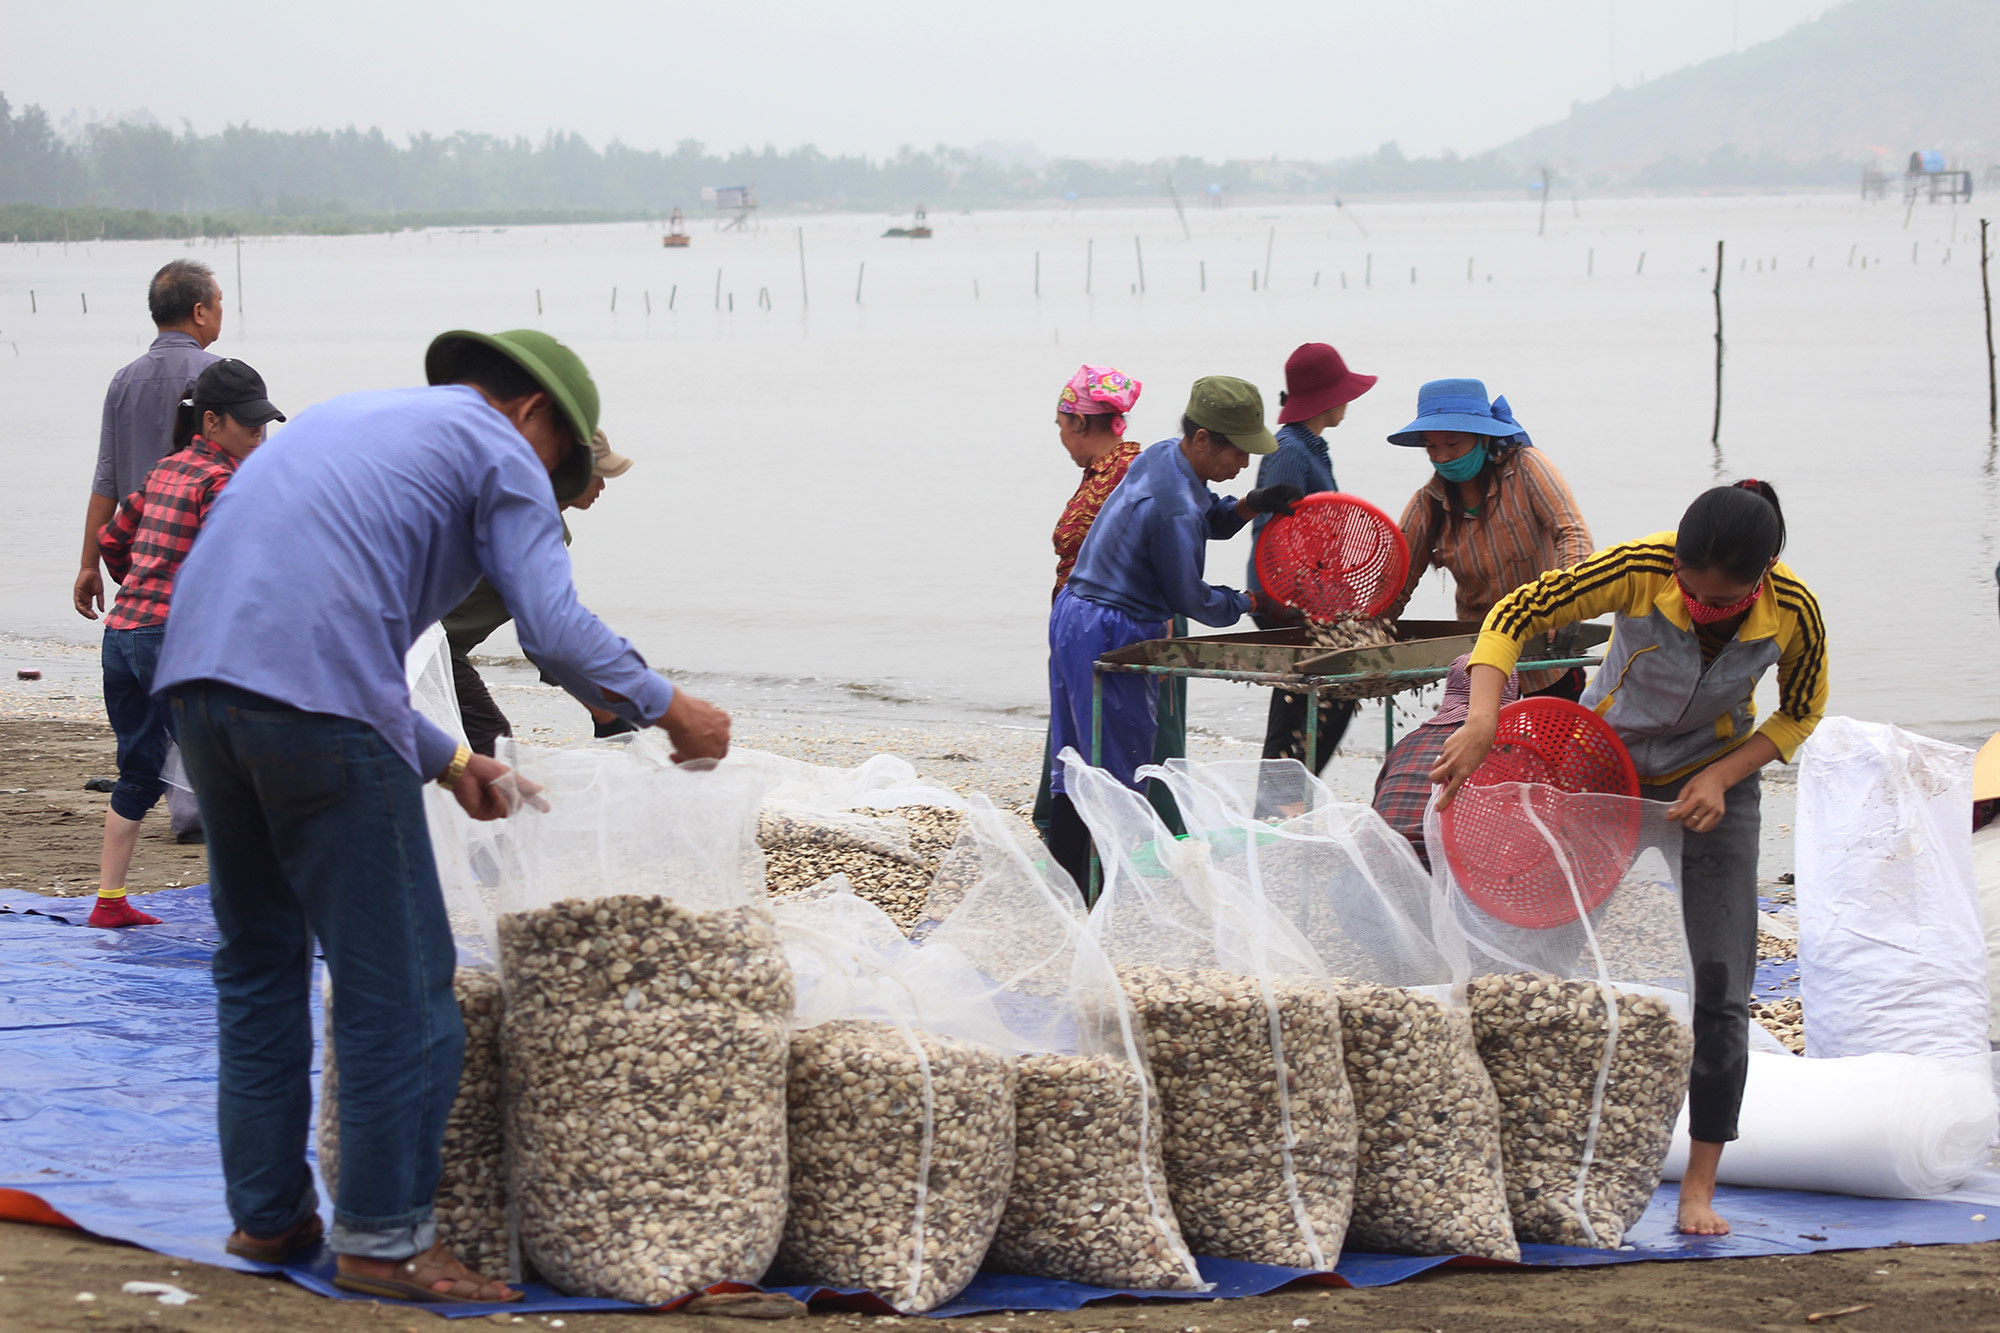 Sau khi ngao được cào lên, toàn bộ sẽ được cho vào máy sàng lọc, rửa sạch để đóng bao bì. Mỗi ngày, người nuôi ngao ở Quỳnh Lưu cung cấp ra thị trường hàng chục tấn.